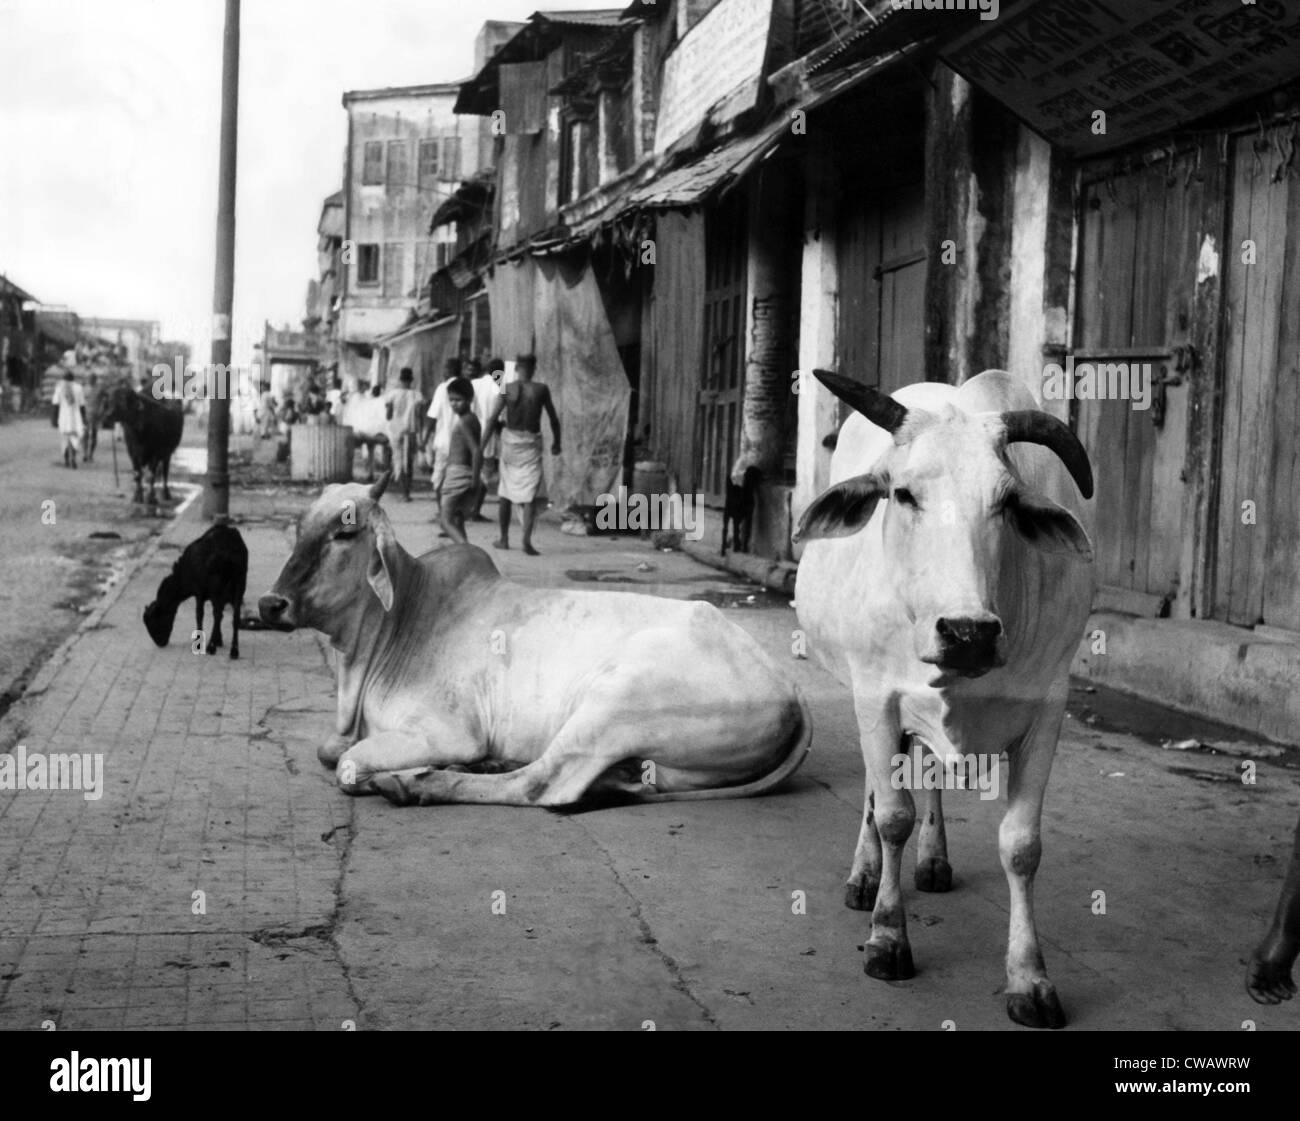 Zwei heilige Kühe auf einem Spaziergang in einem ärmeren Teil von Kalkutta, Indien, ca. 1947 gezeigt. Höflichkeit: CSU Archive/Everett Collection Stockfoto